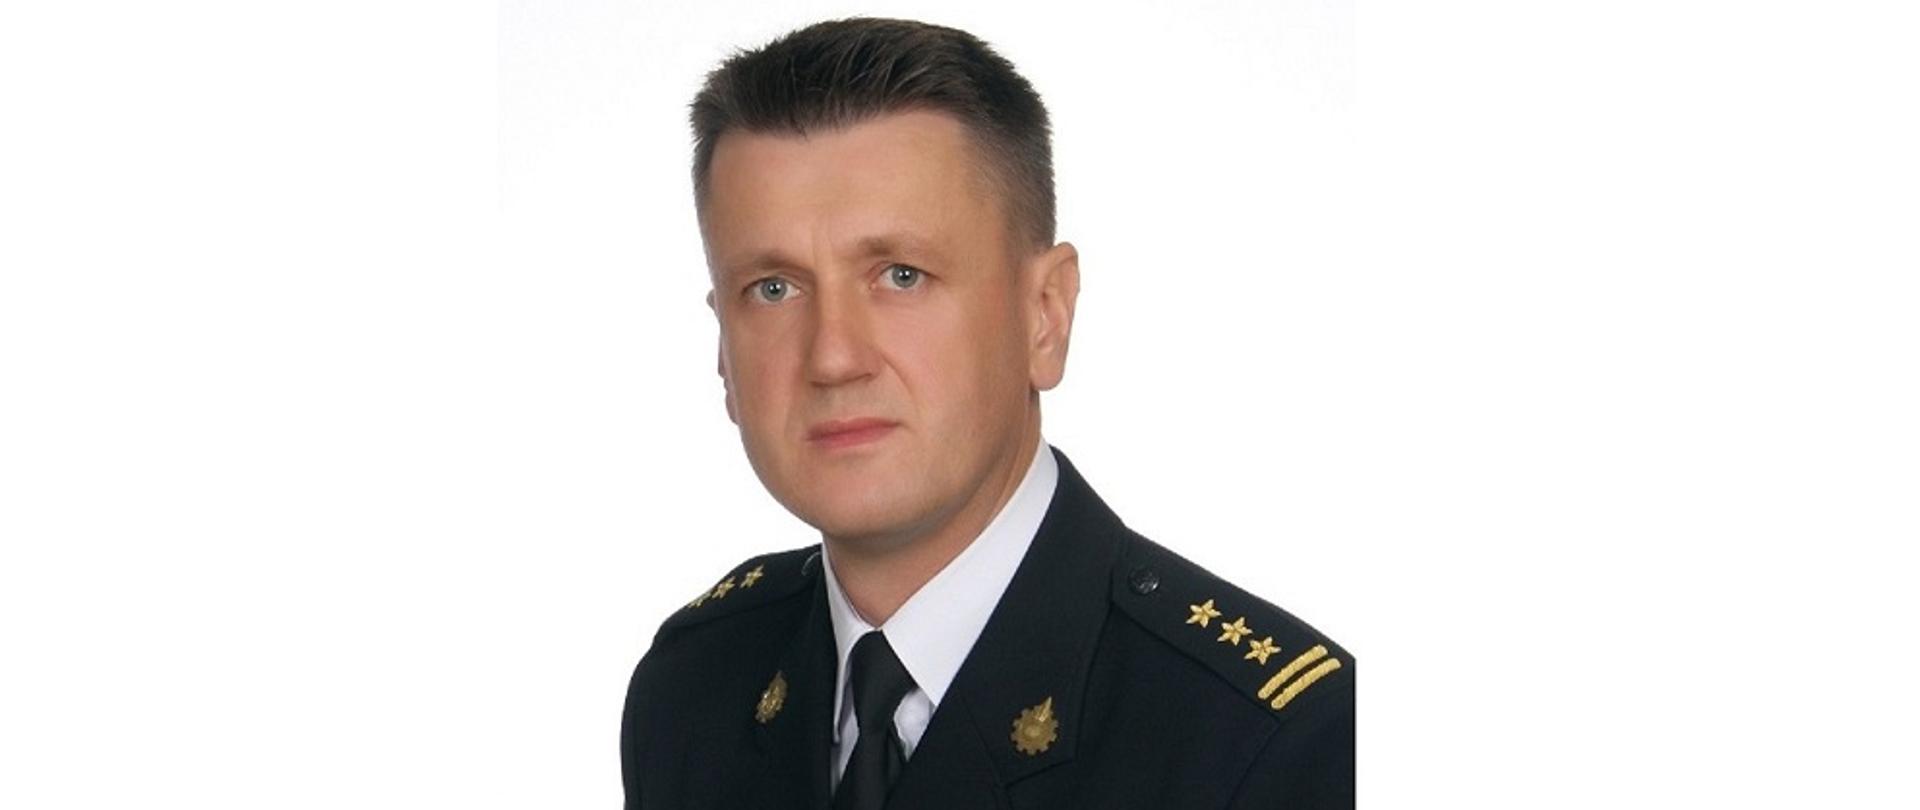 Zdjęcie portretowe Zastępcy Komendanta st. bryg. mgr inż. Pietrzaka Sławomira w mundurze